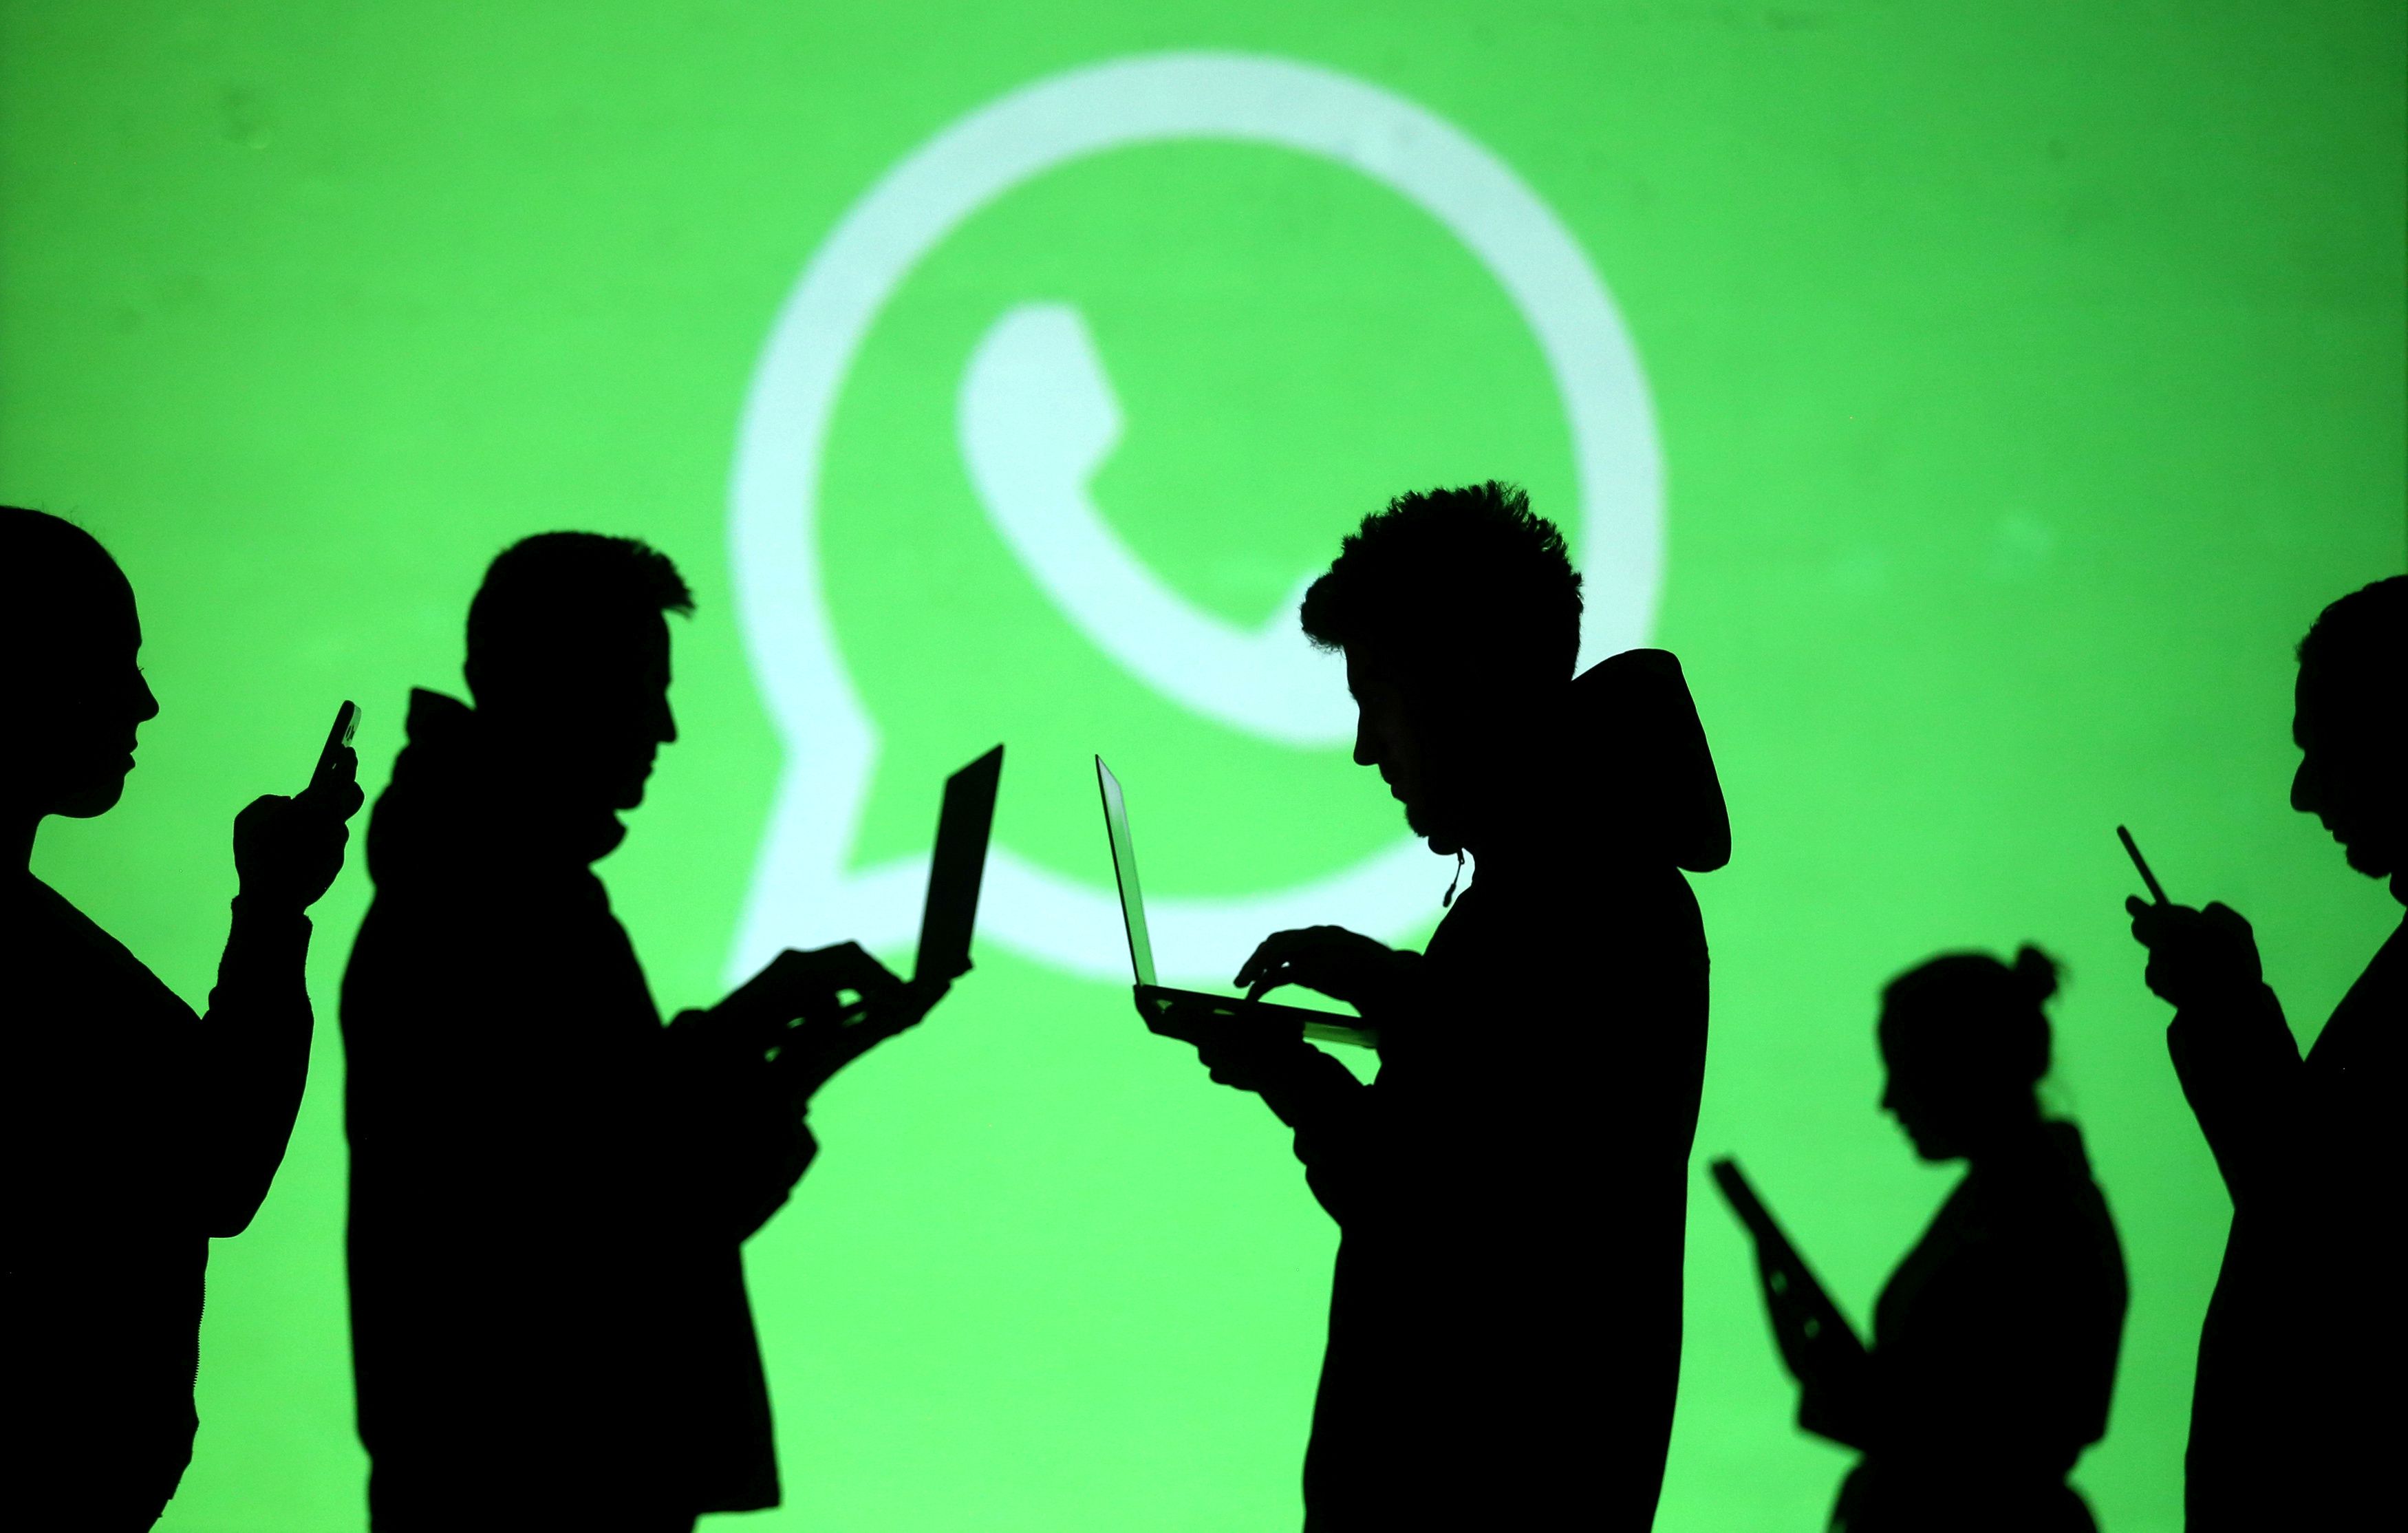 WhatsApp ha recibido muchas críticas por su reciente intento de cambiar las normas de su servicio (REUTERS/Dado Ruvic/Illustration/Archivo)